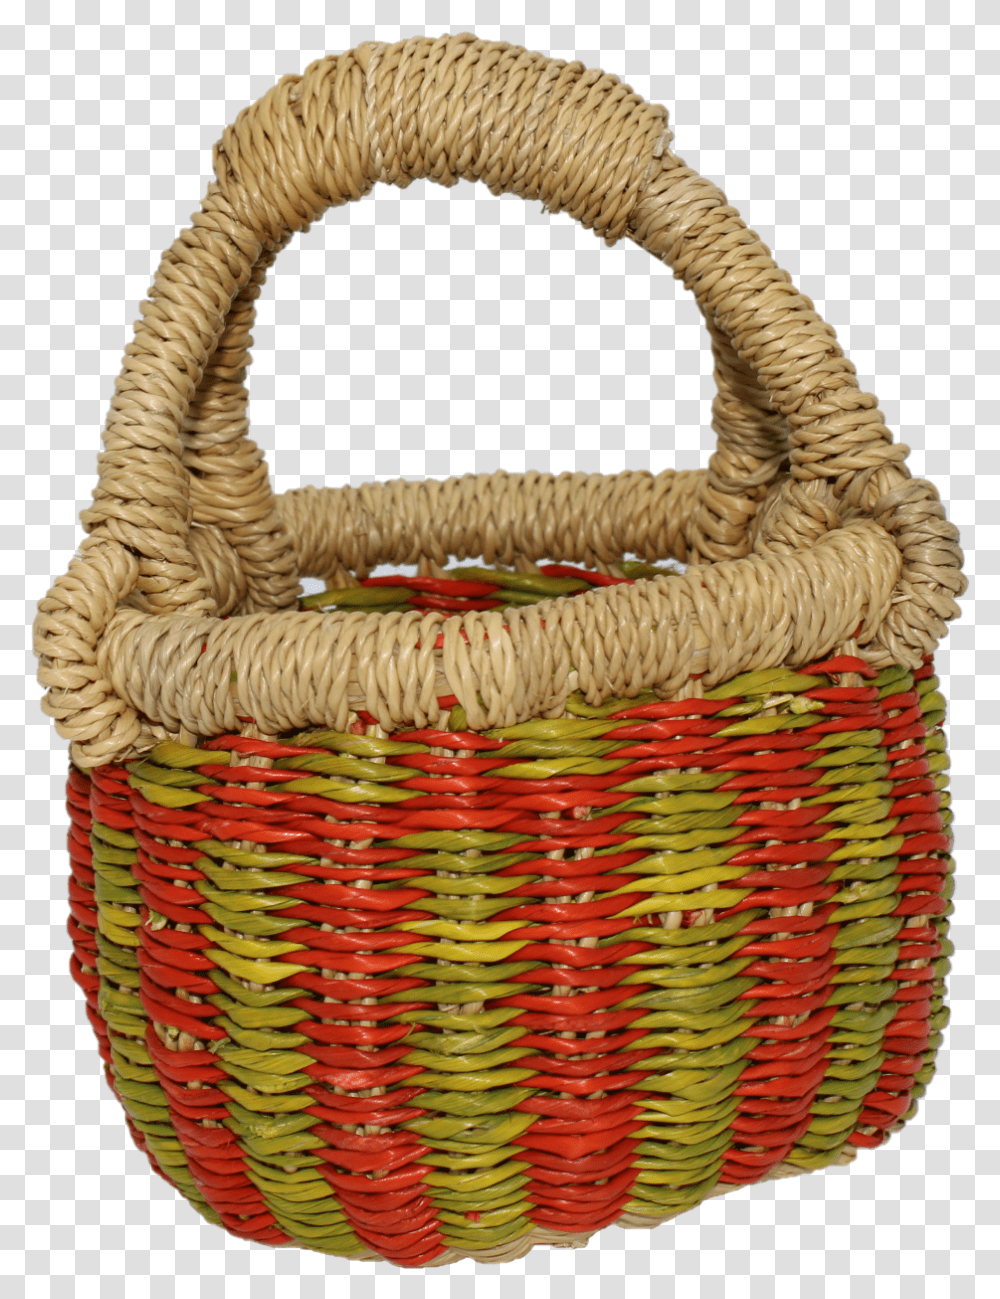 Storage Basket, Bird, Animal, Shopping Basket, Rug Transparent Png